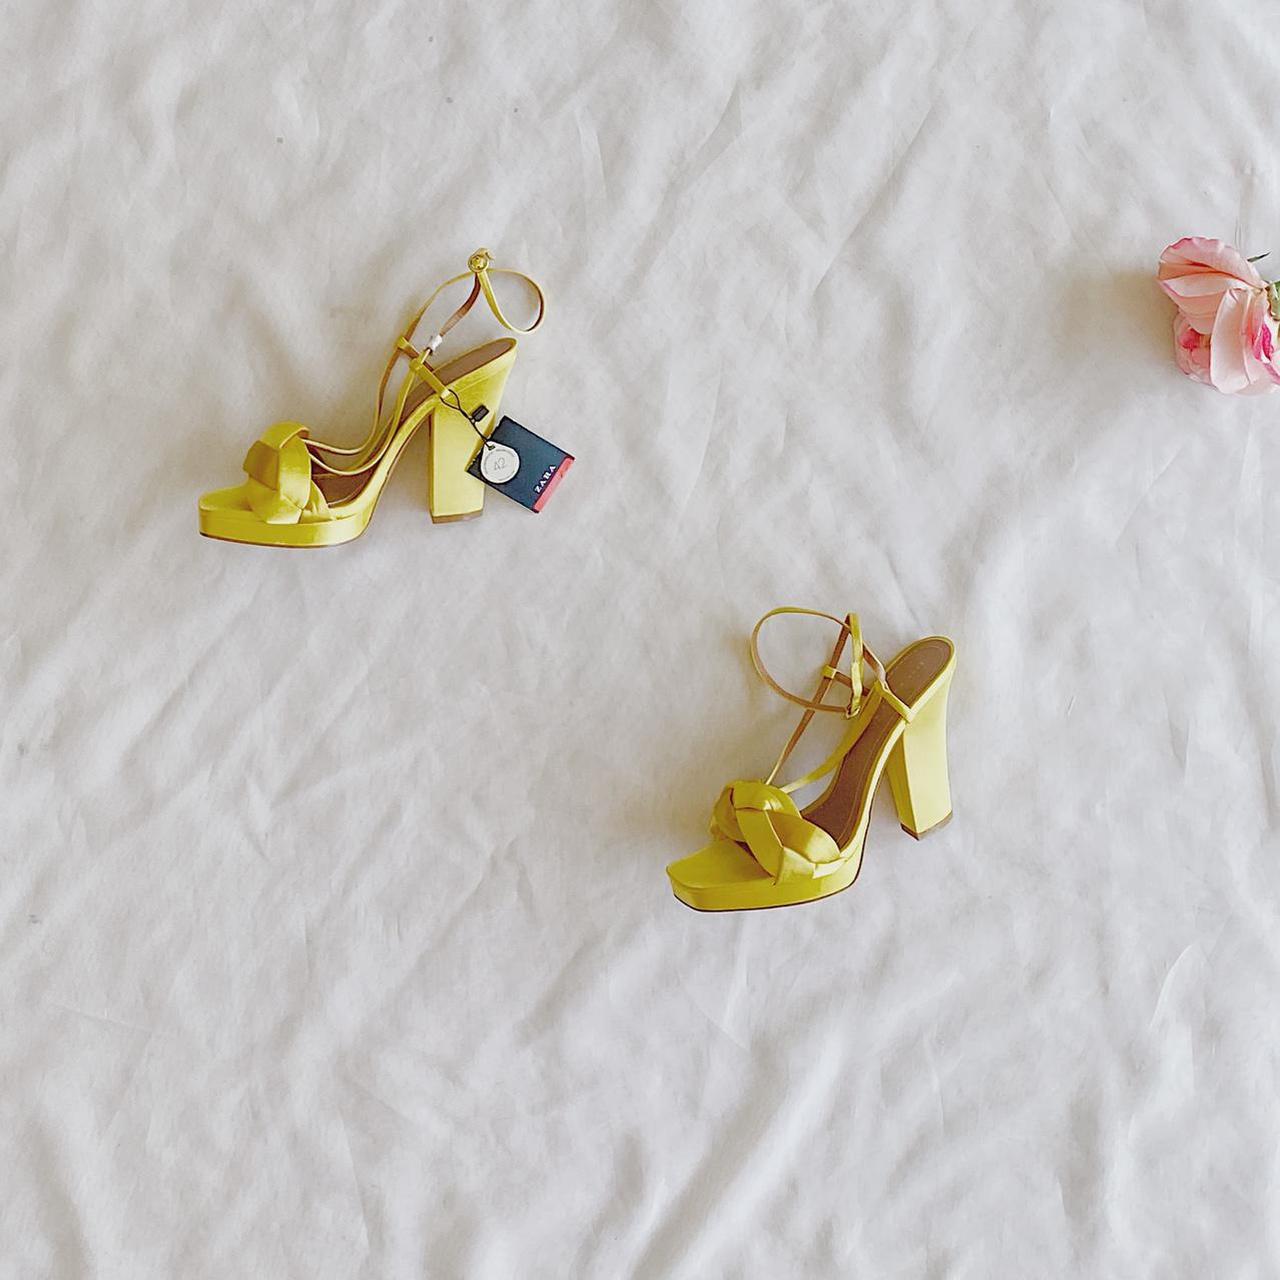 Product Image 1 - Mustard Zara Heels
4.5 inch heels